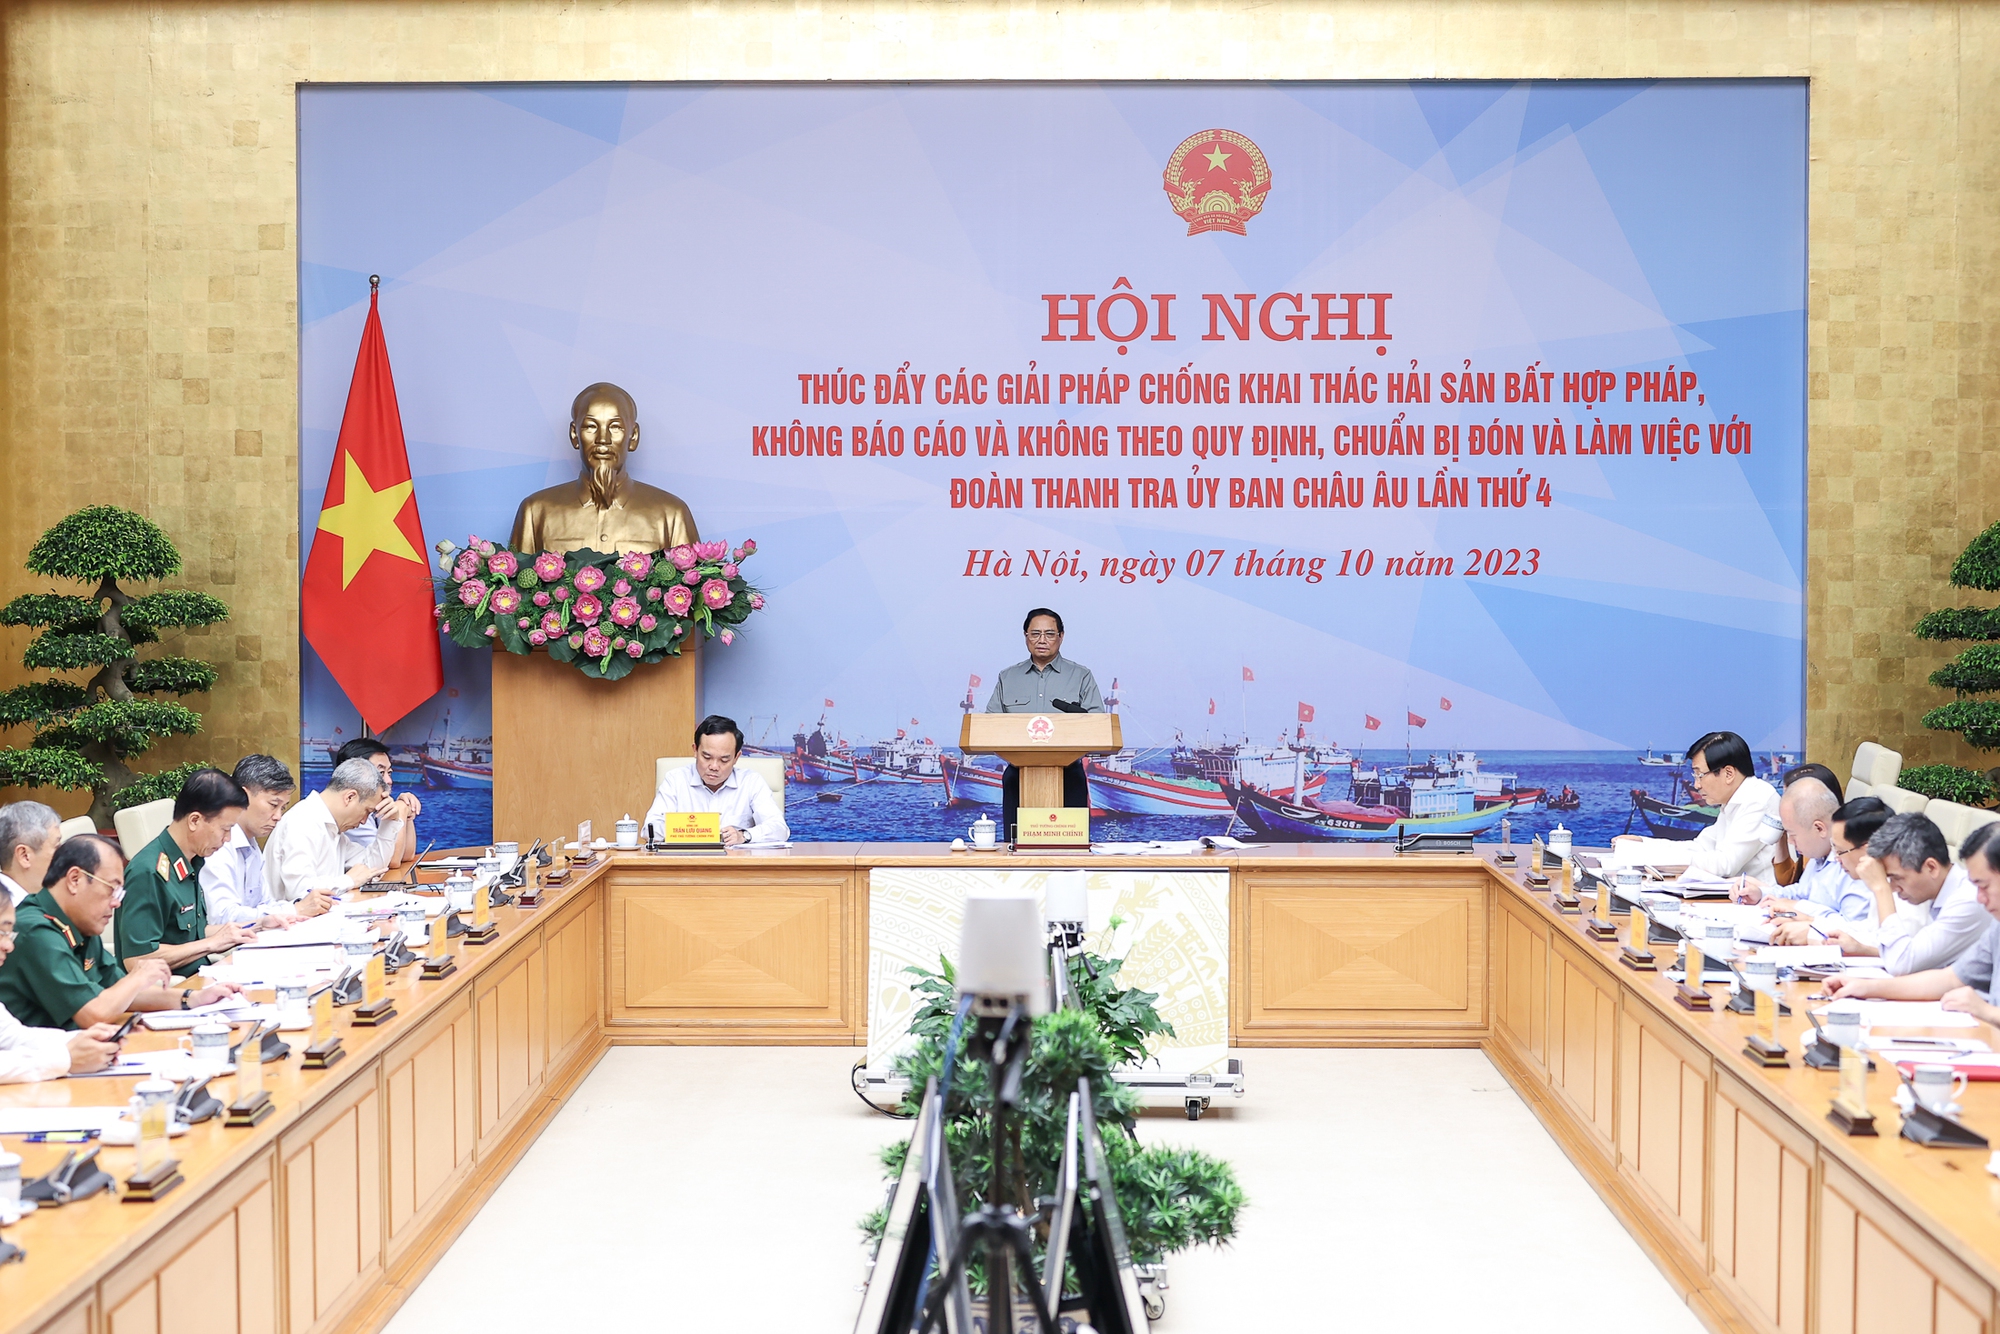 Thủ tướng Chính phủ Phạm Minh Chính chủ trì Hội nghị thúc đẩy các giải pháp chống IUU - Ảnh: VGP/Nhật Bắc